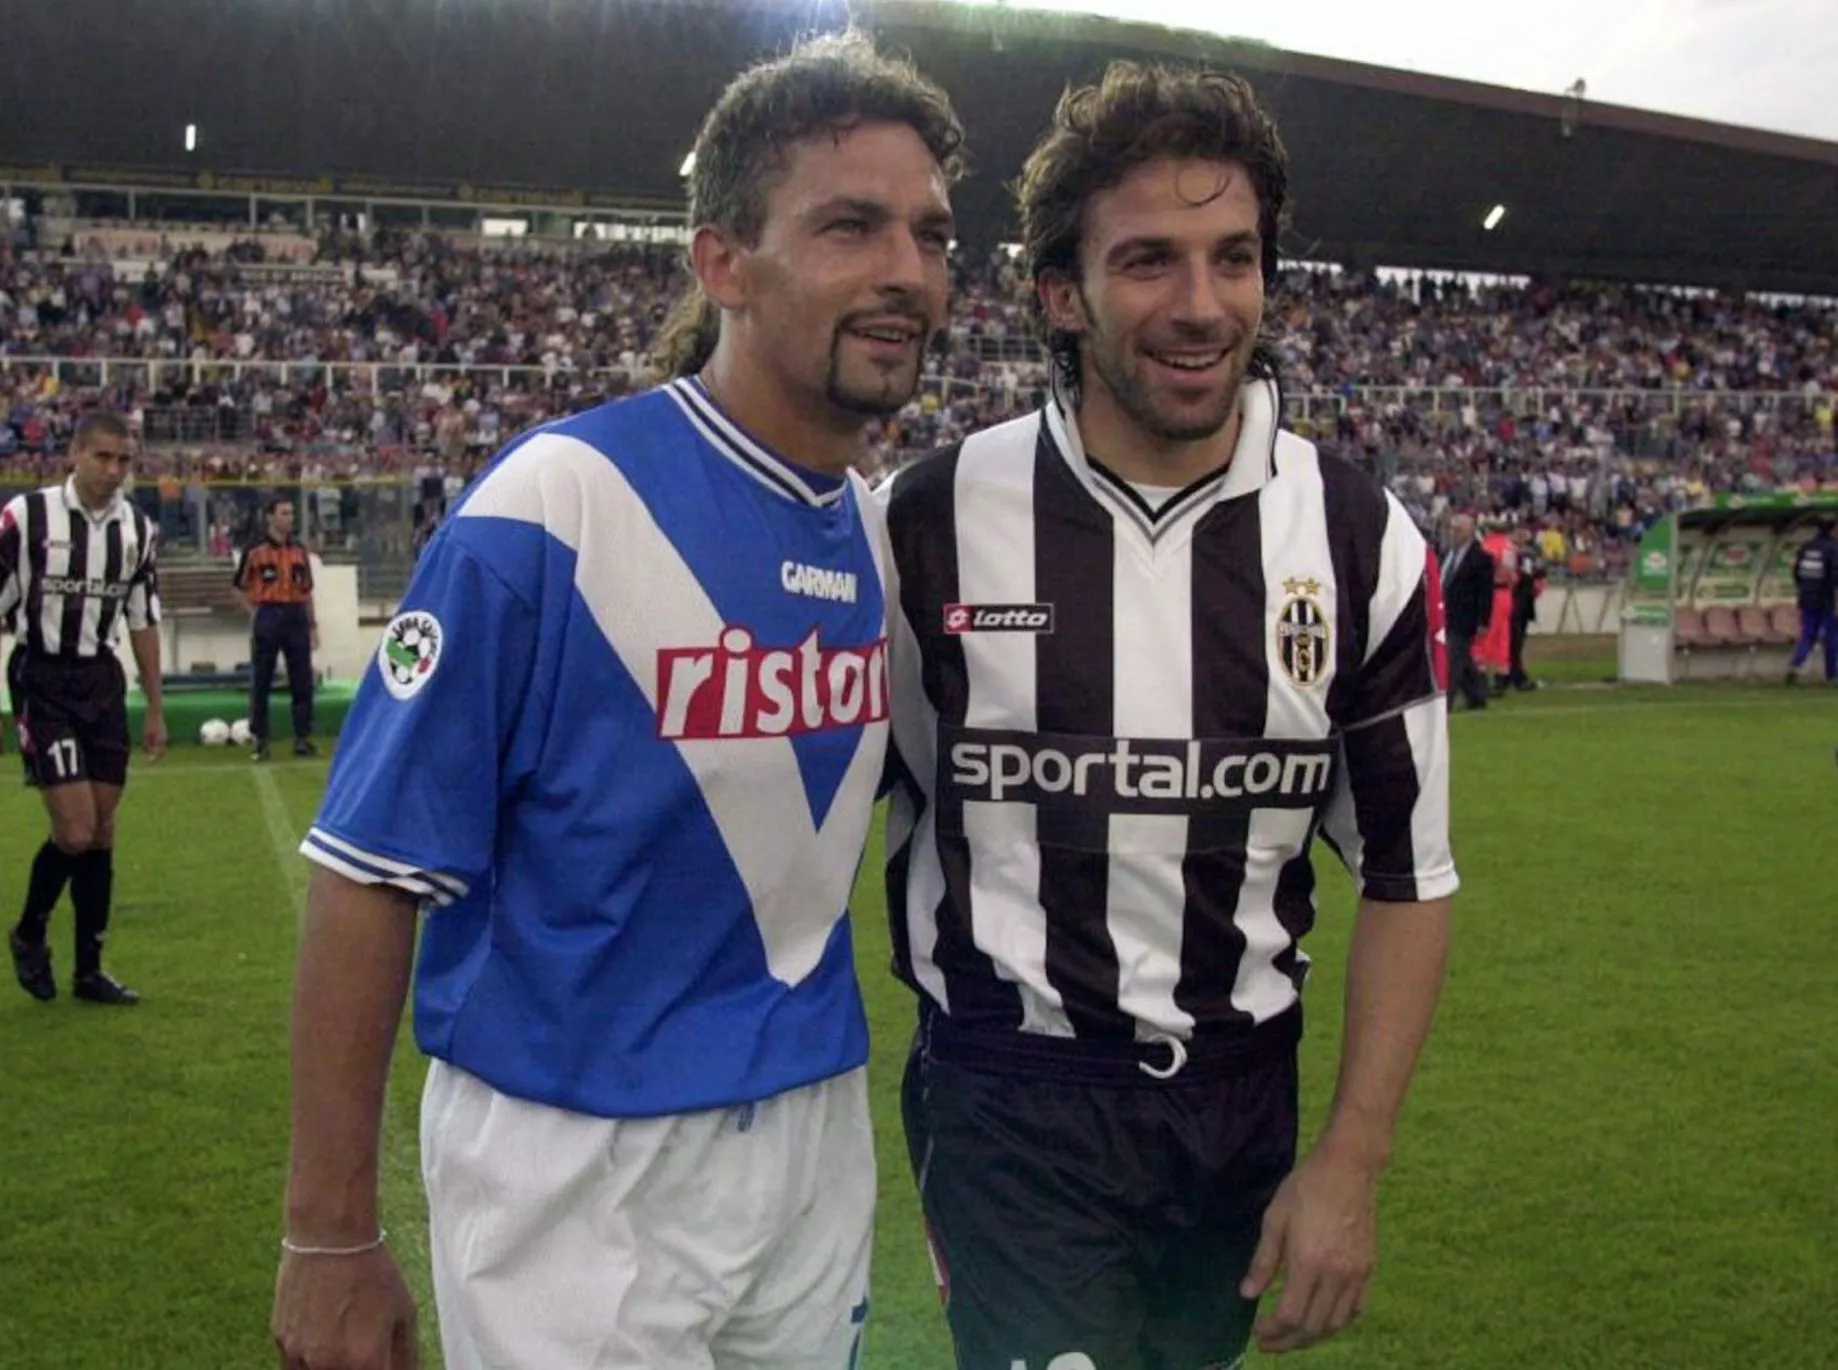 Il y a 20 ans, Roberto Baggio inscrivait cette merveille face à la Juve